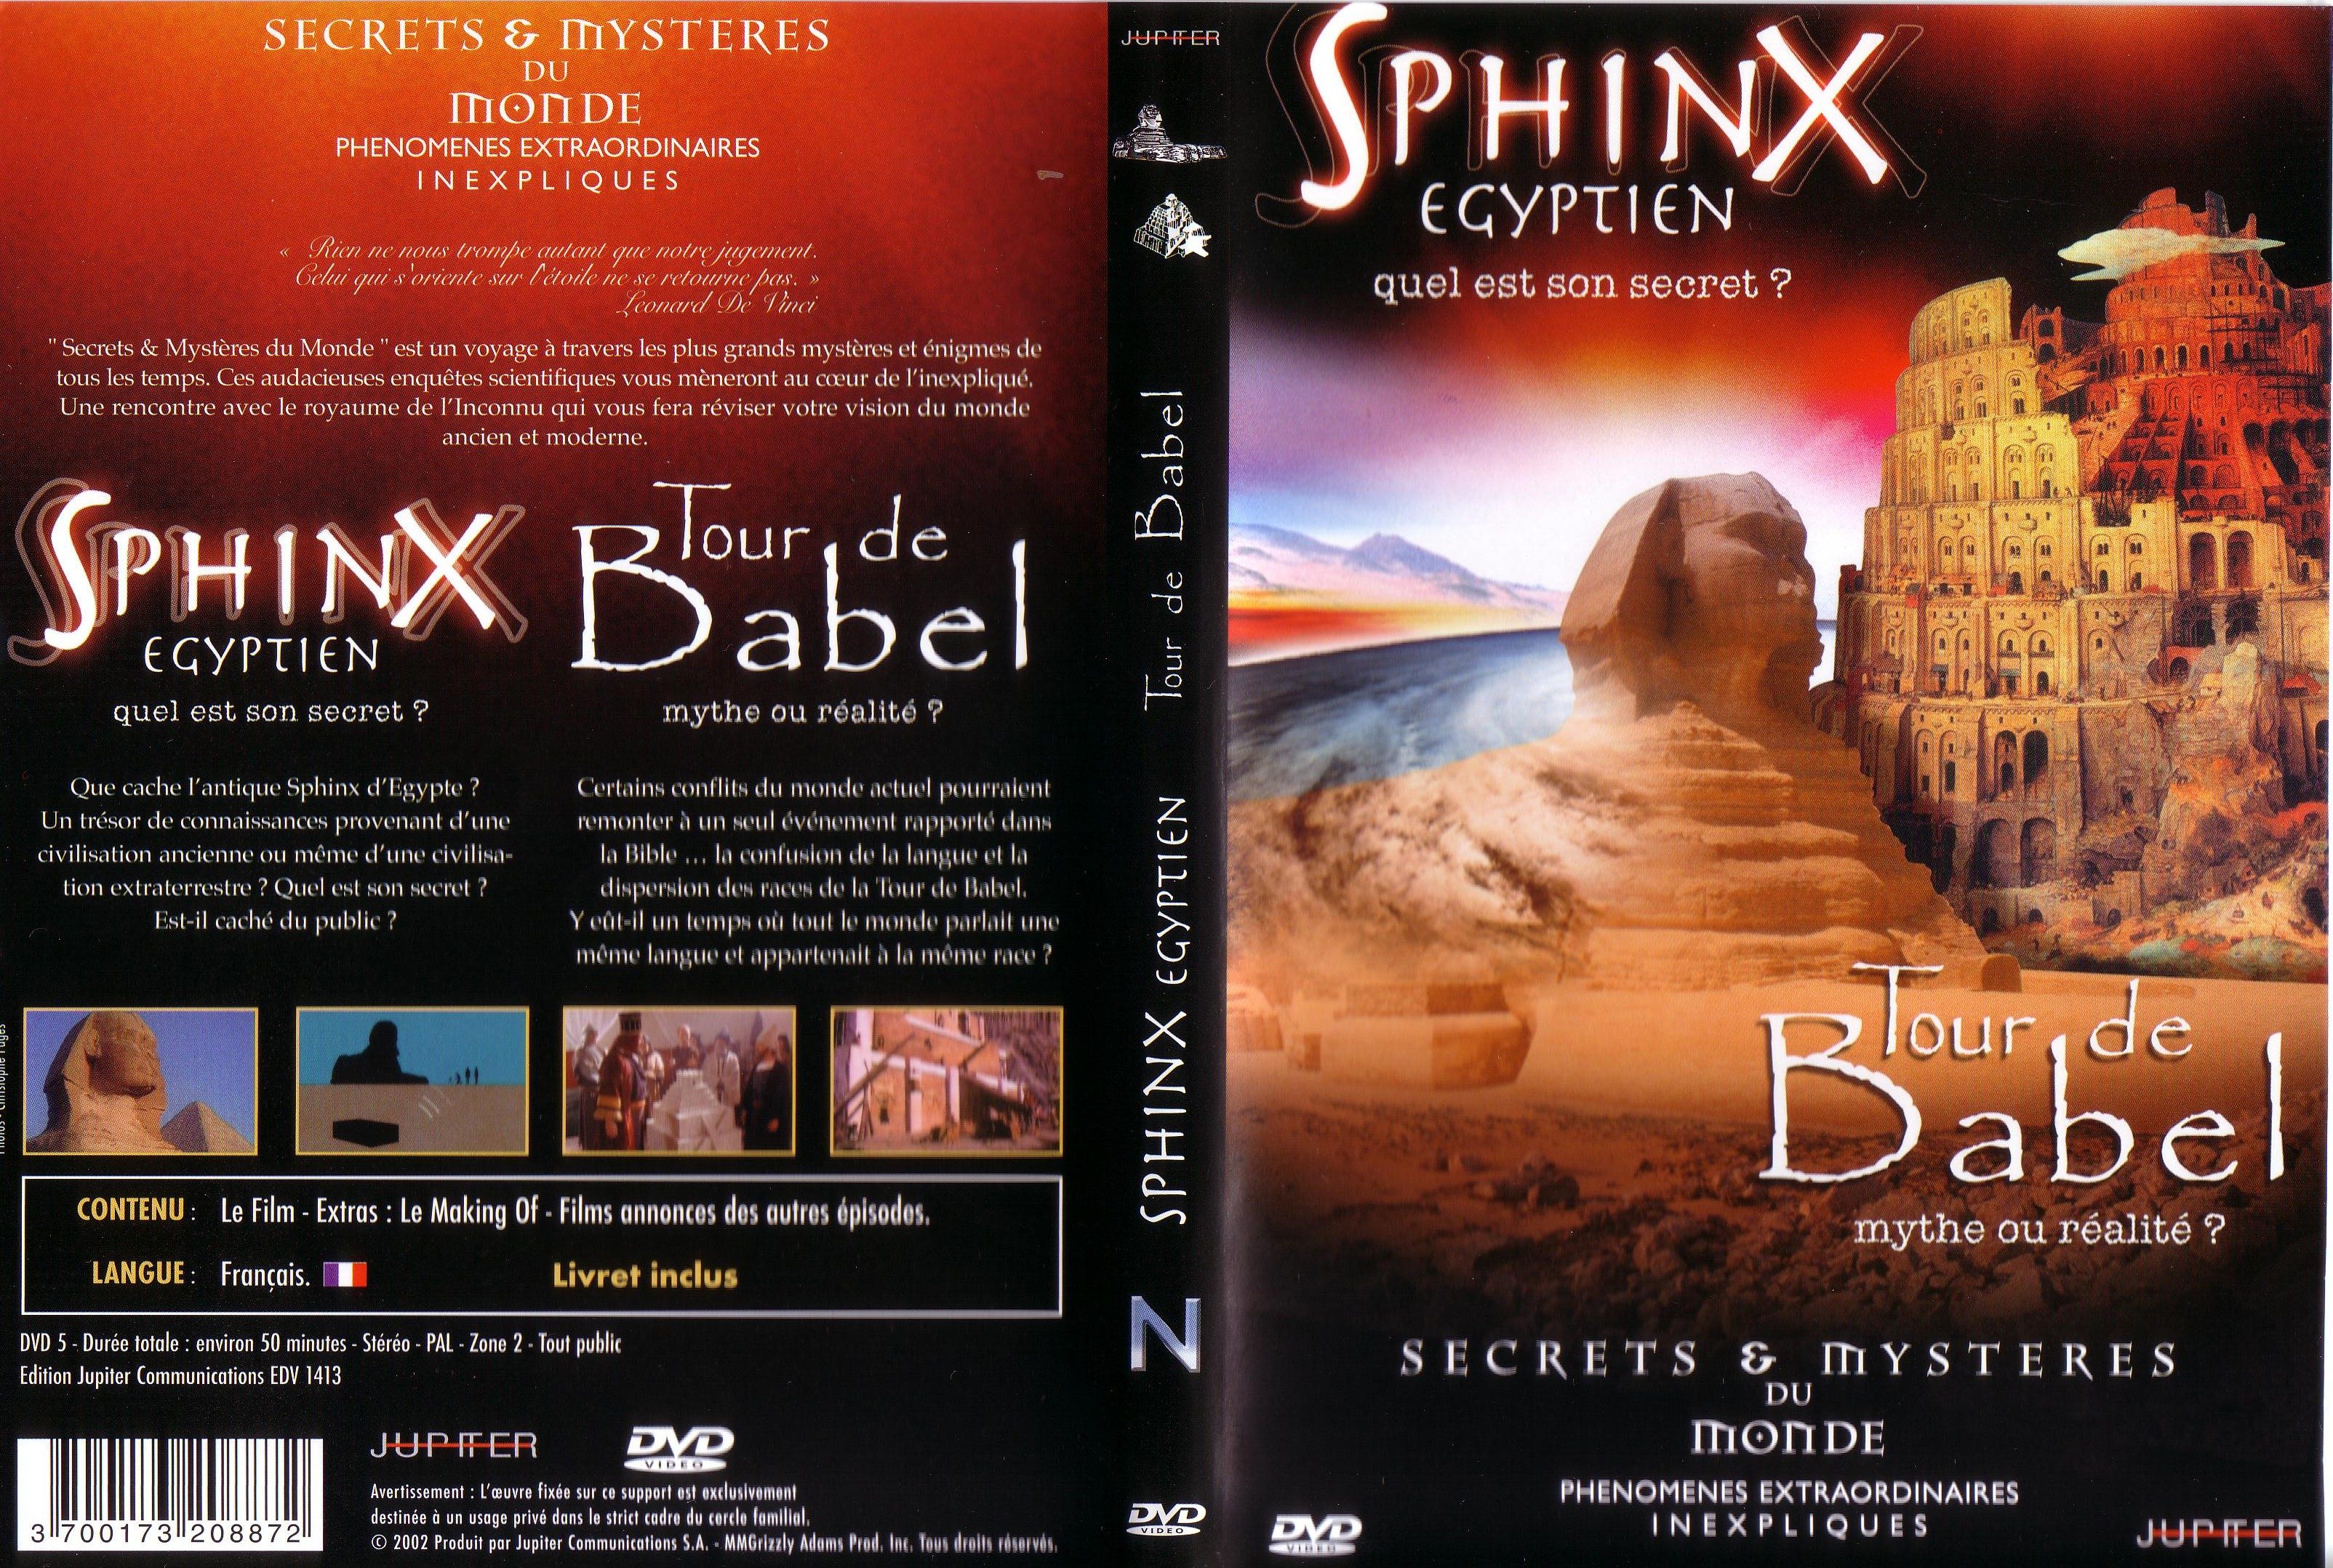 Jaquette DVD Sphinx egyptien tour de babel